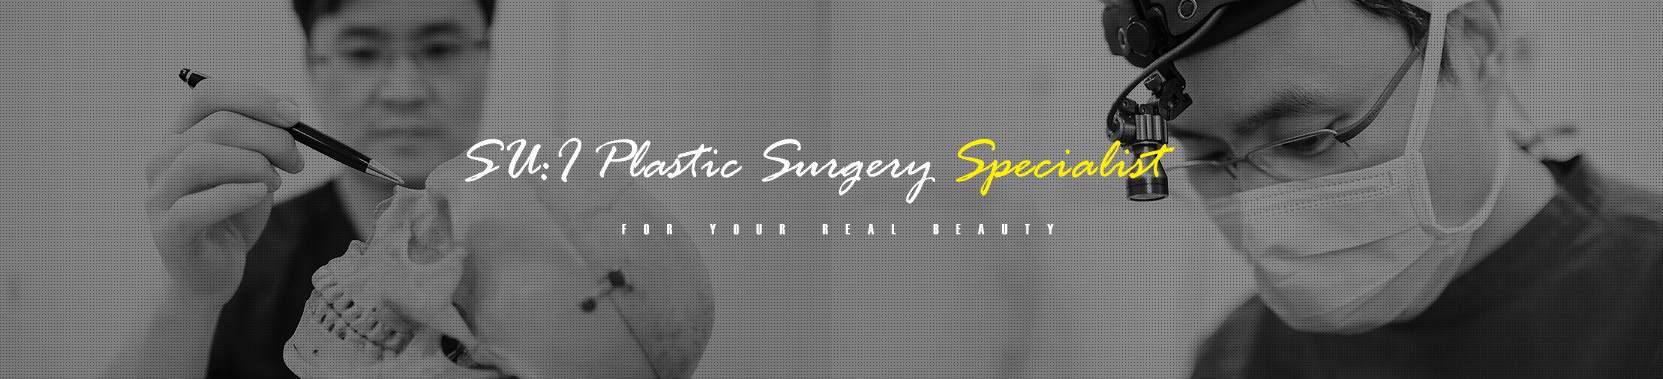 sui plasticsurgery specialist